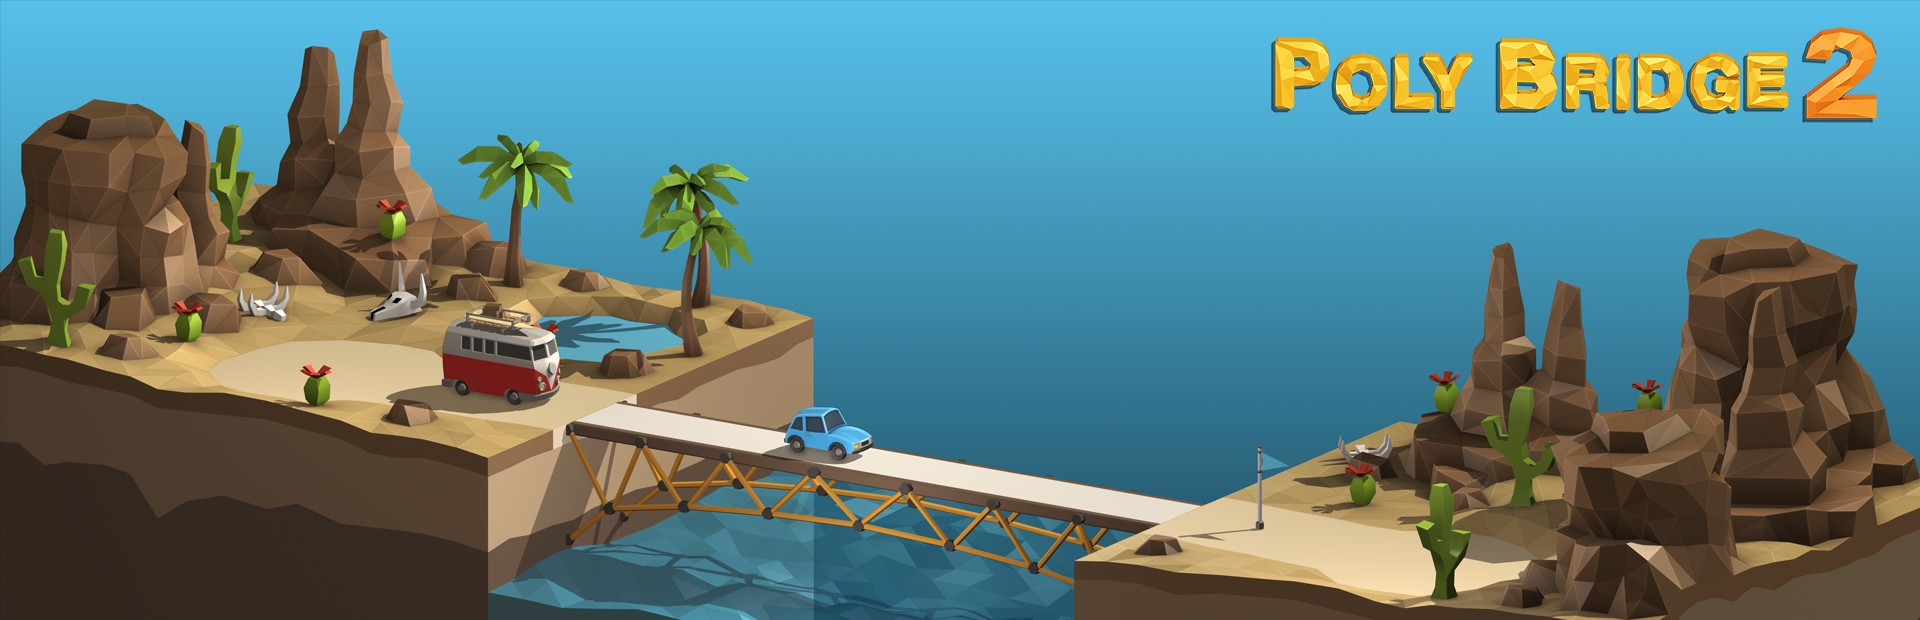 دانلود بازی Poly Bridge 2 برای کامپیوتر | گیمباتو